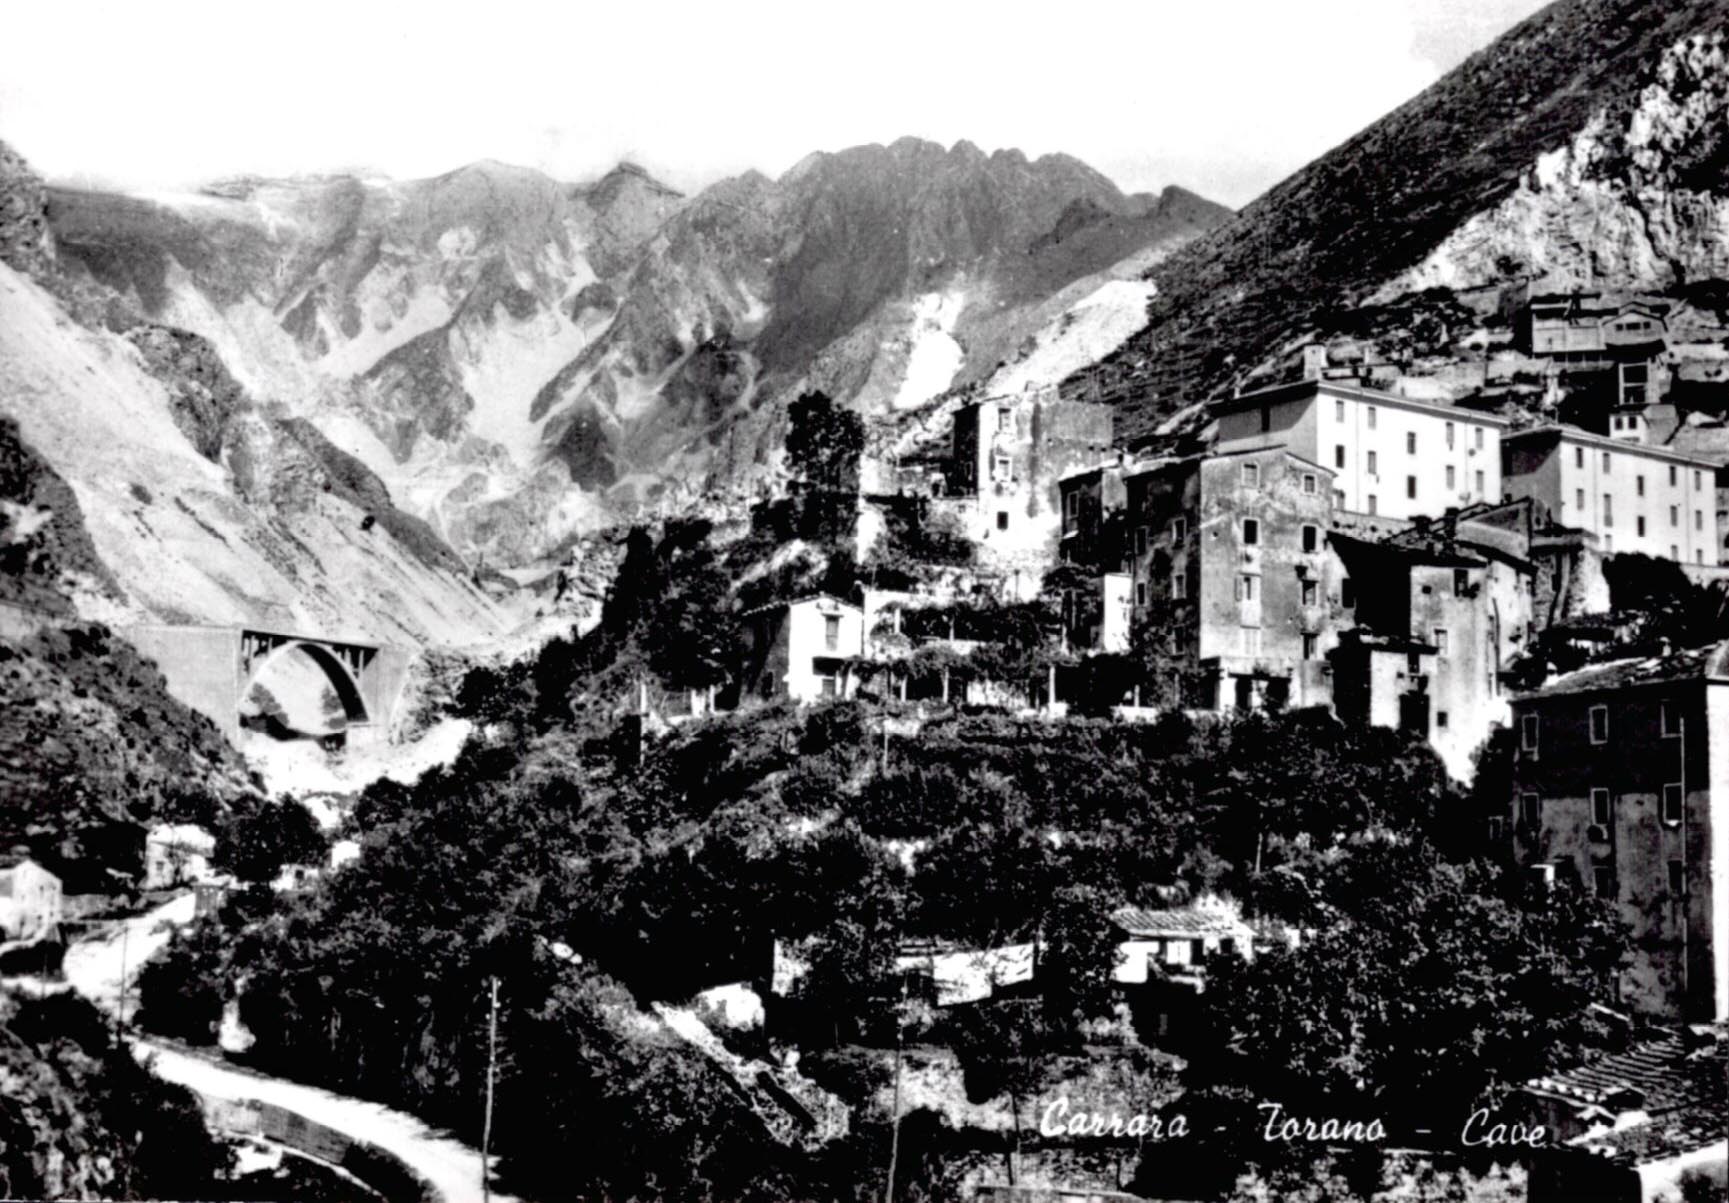 bi Carrara-Torano cave